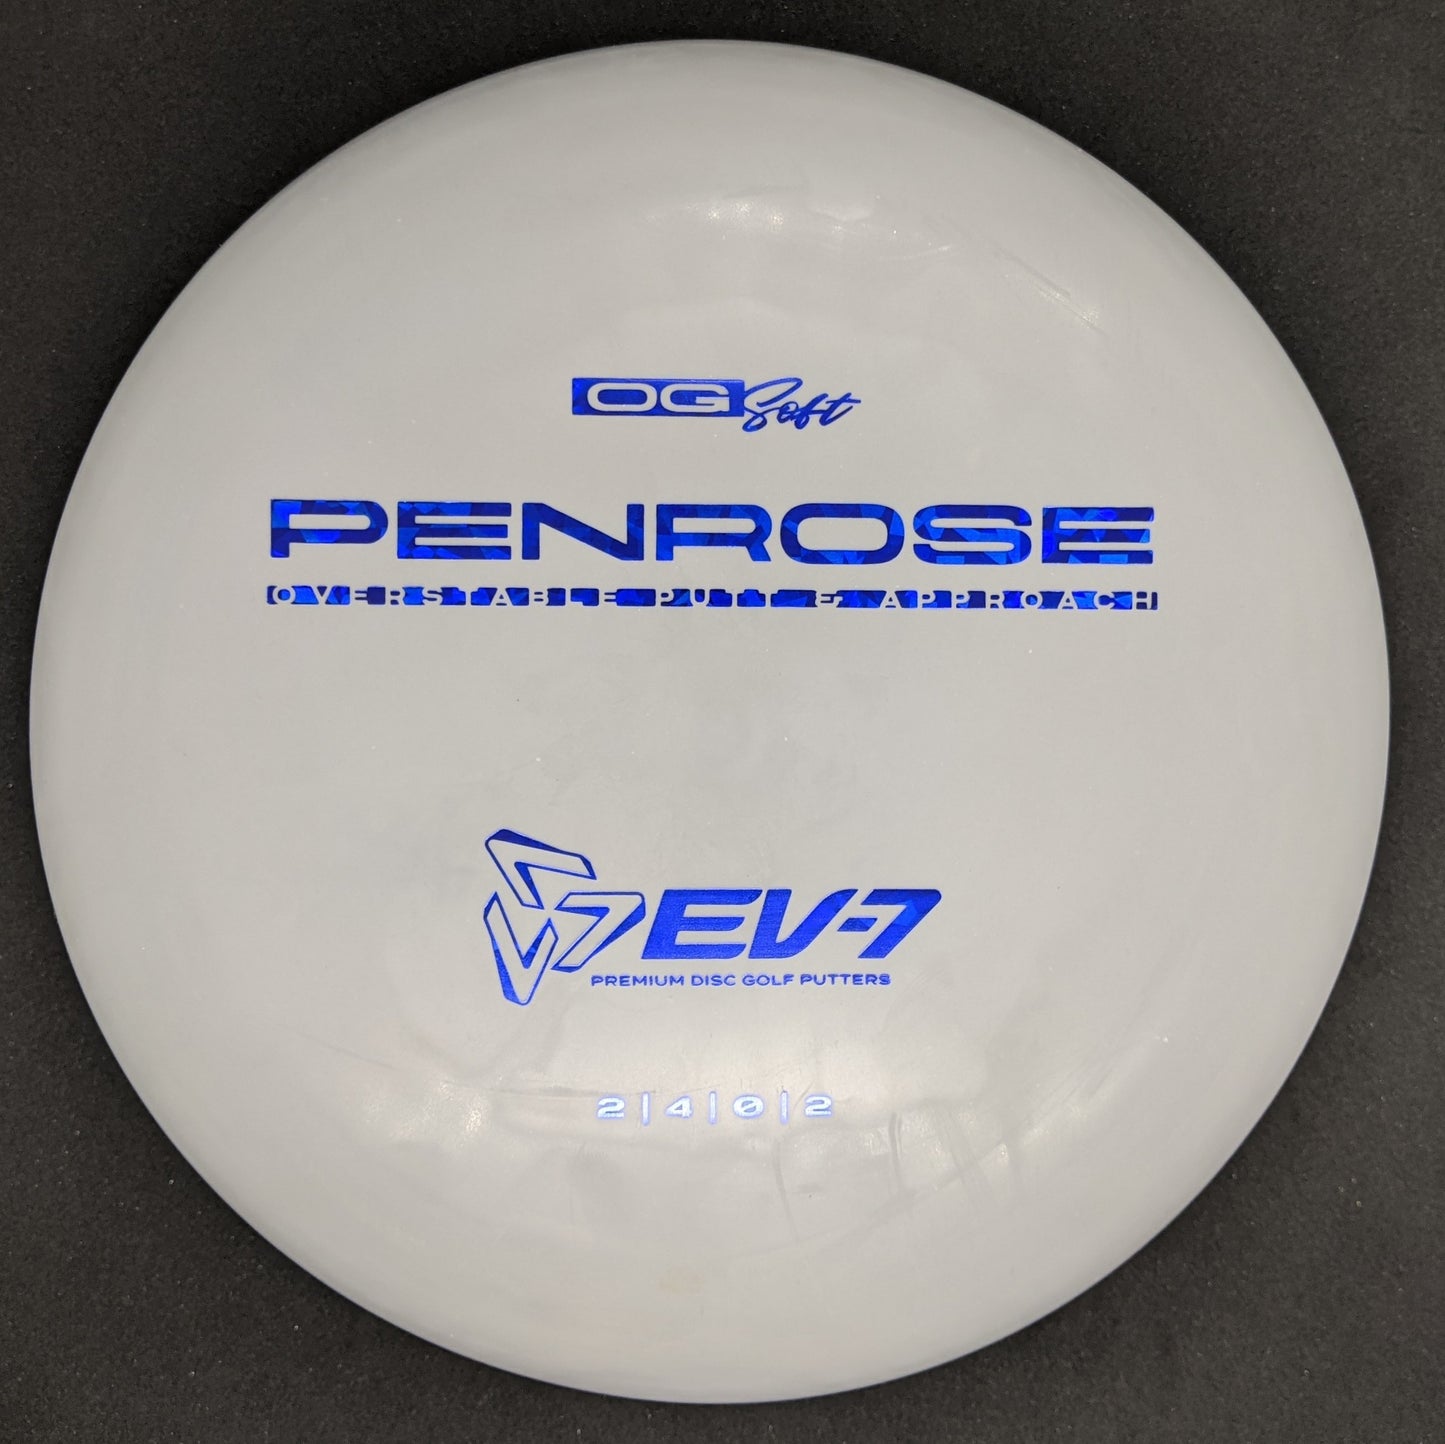 EV-7 - Penrose - OG soft